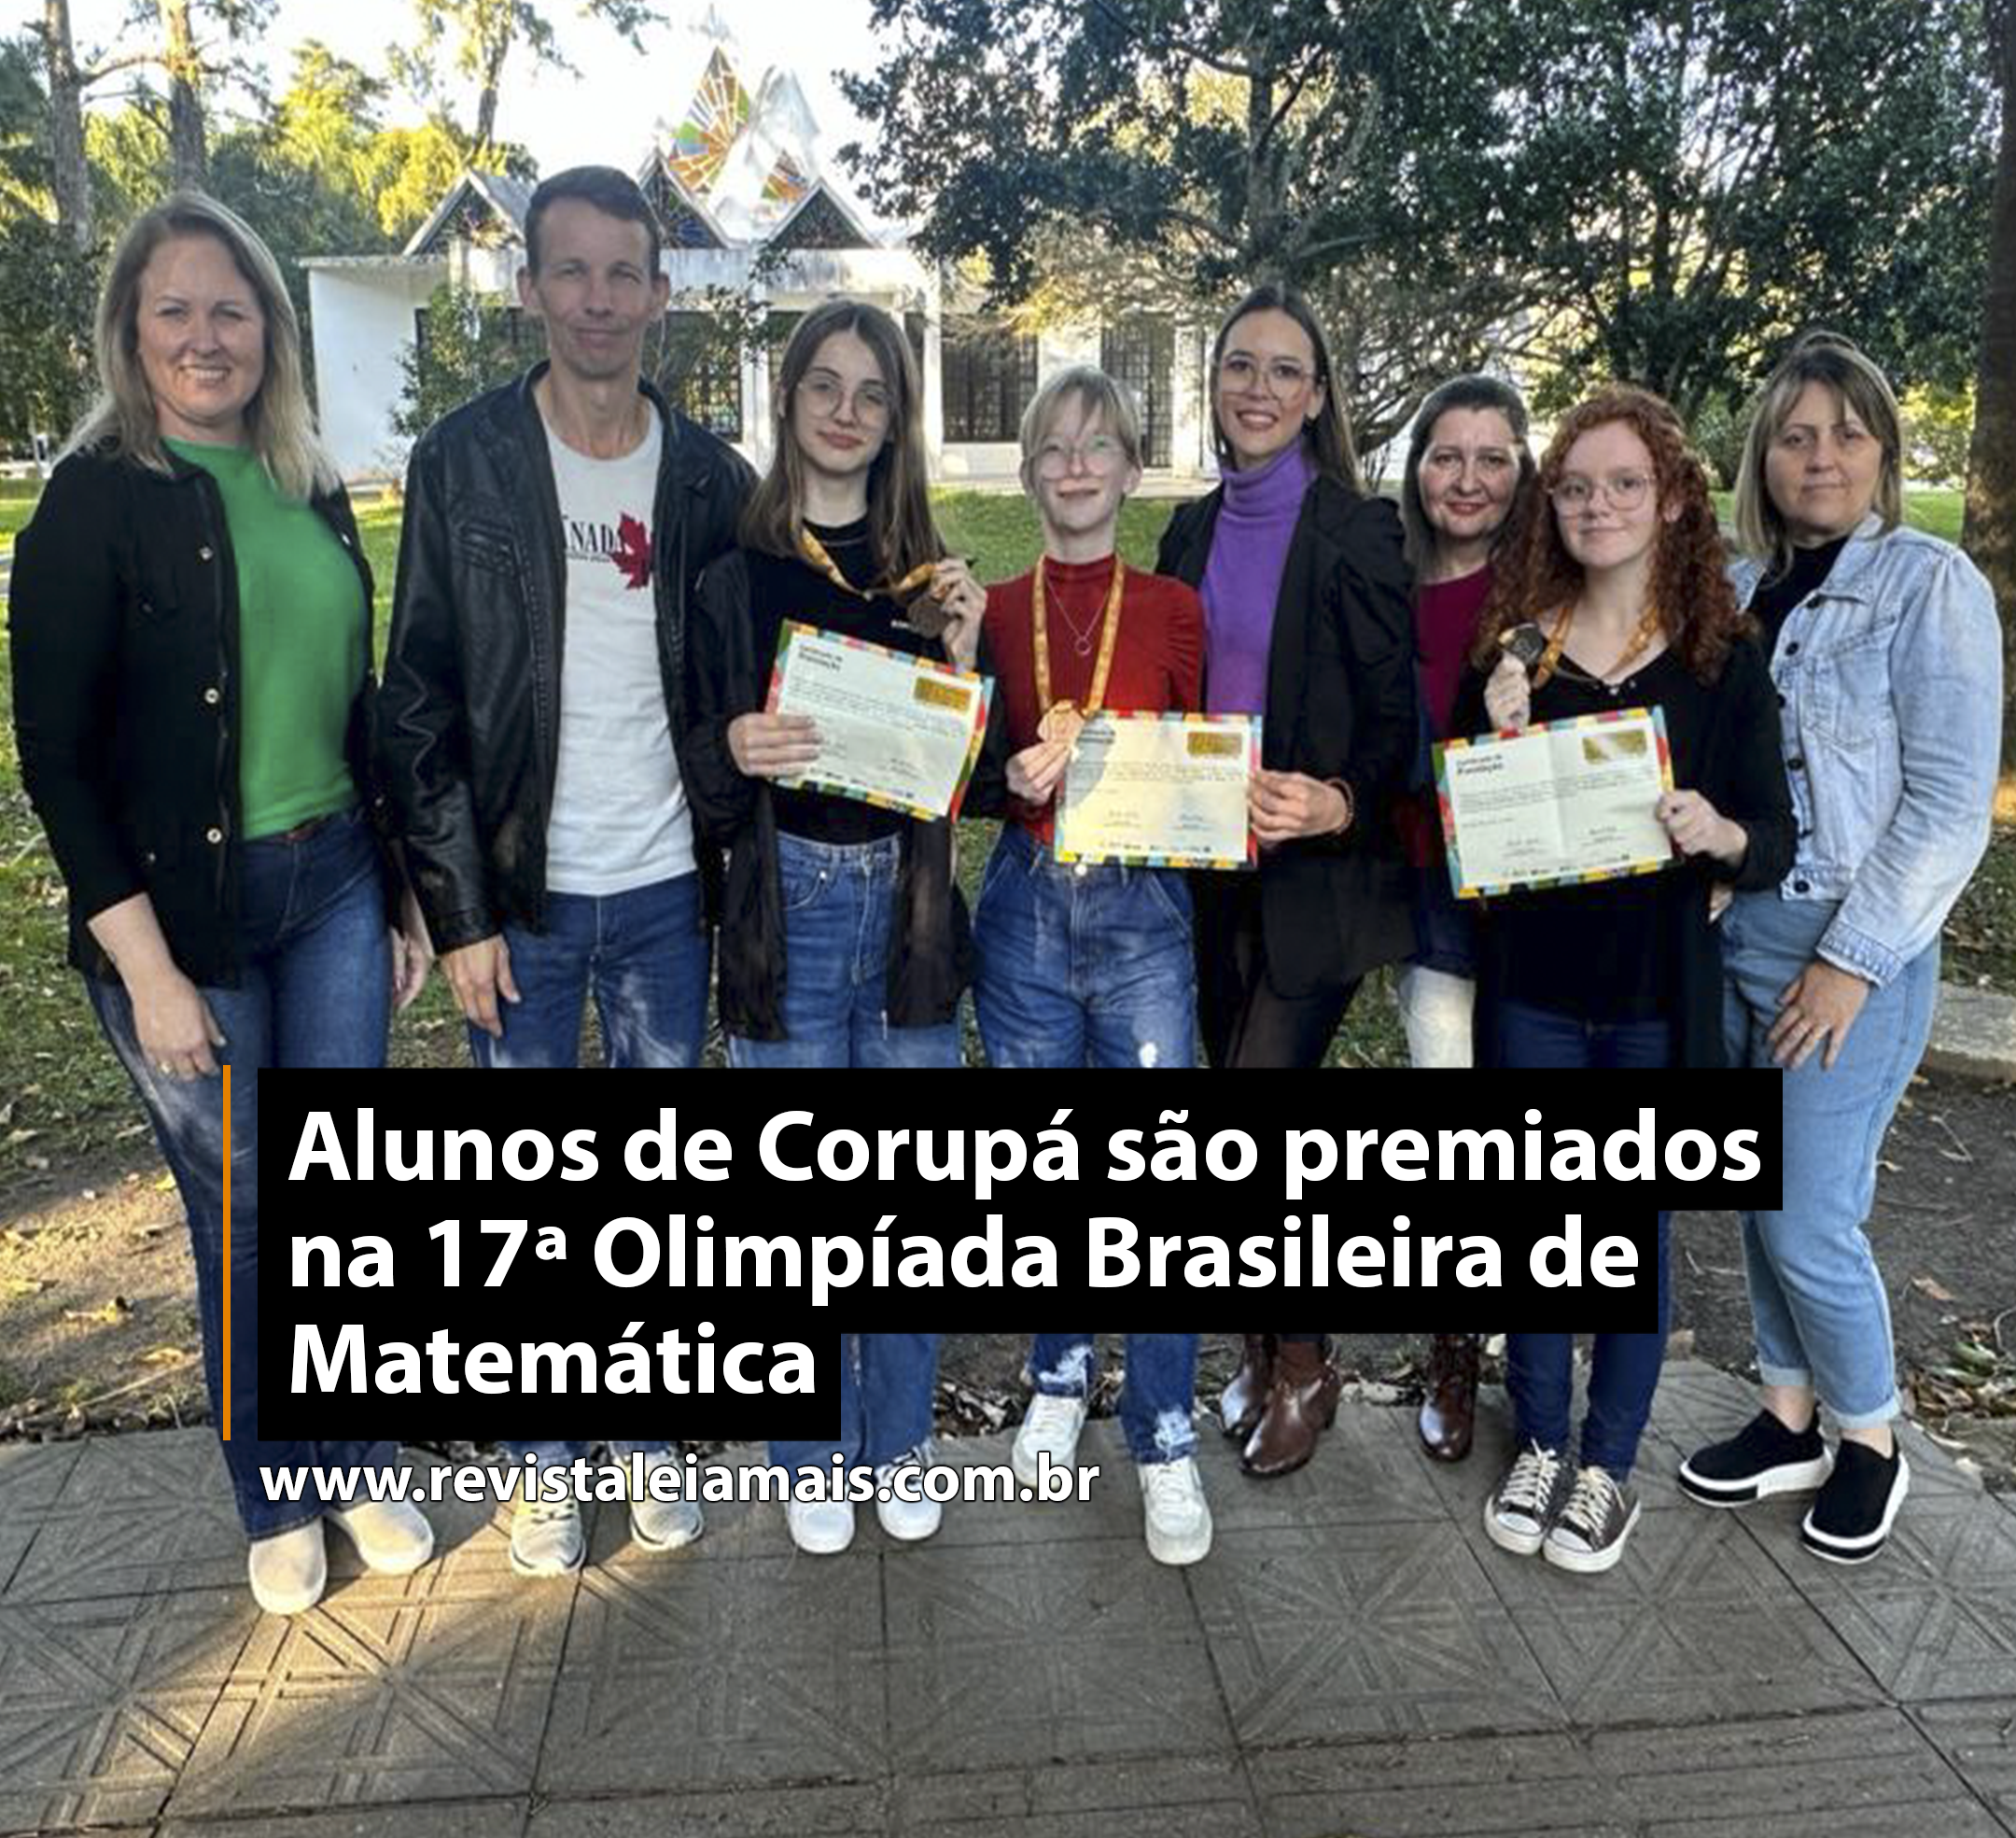 Alunos de Corupá são premiados na 17ª Olimpíada Brasileira de Matemática